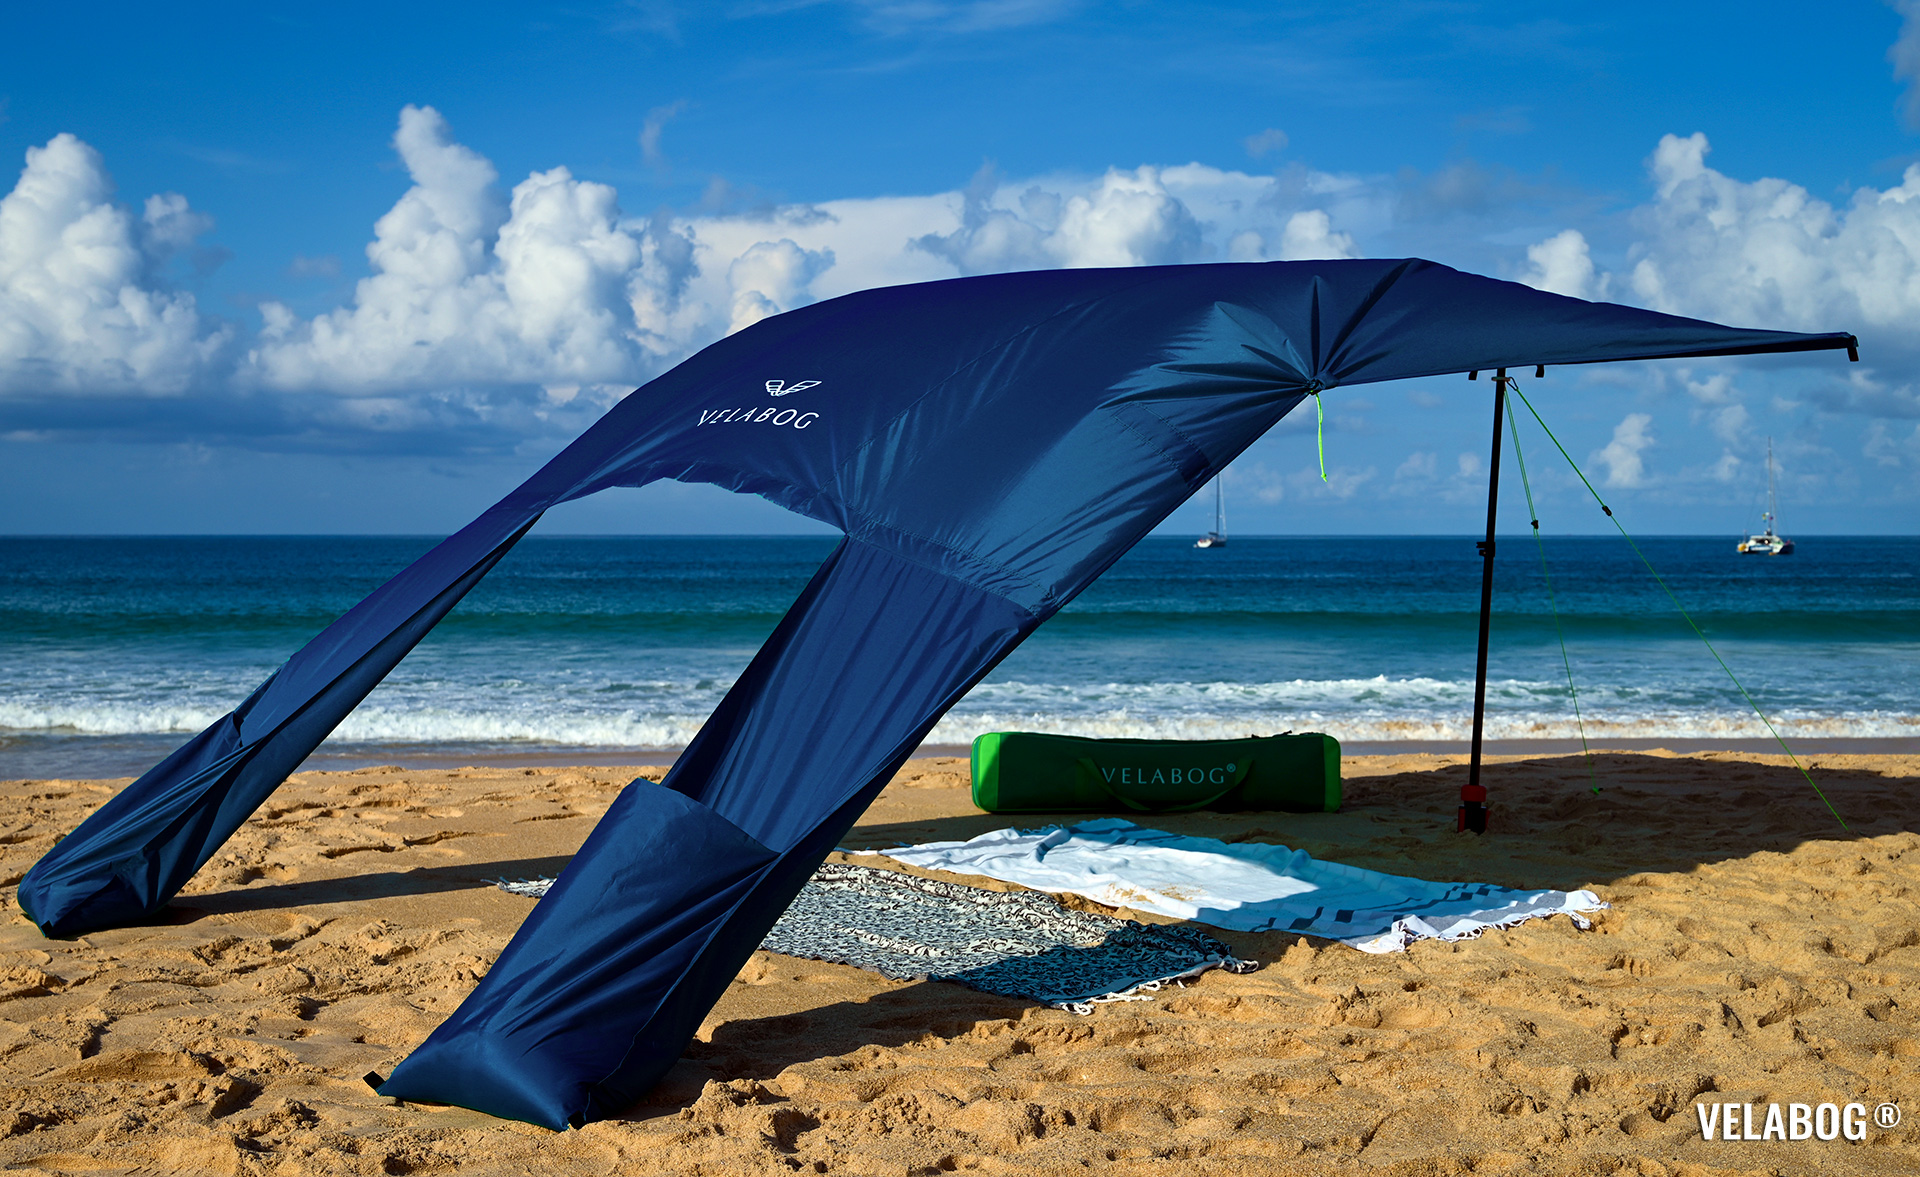 Солнечный пляжный парус навес Velabog Breeze. Вариант установки А - от слабого до сильного ветра. Цвет синий. Лучшая защита от солнца на пляже. | Velabog ©